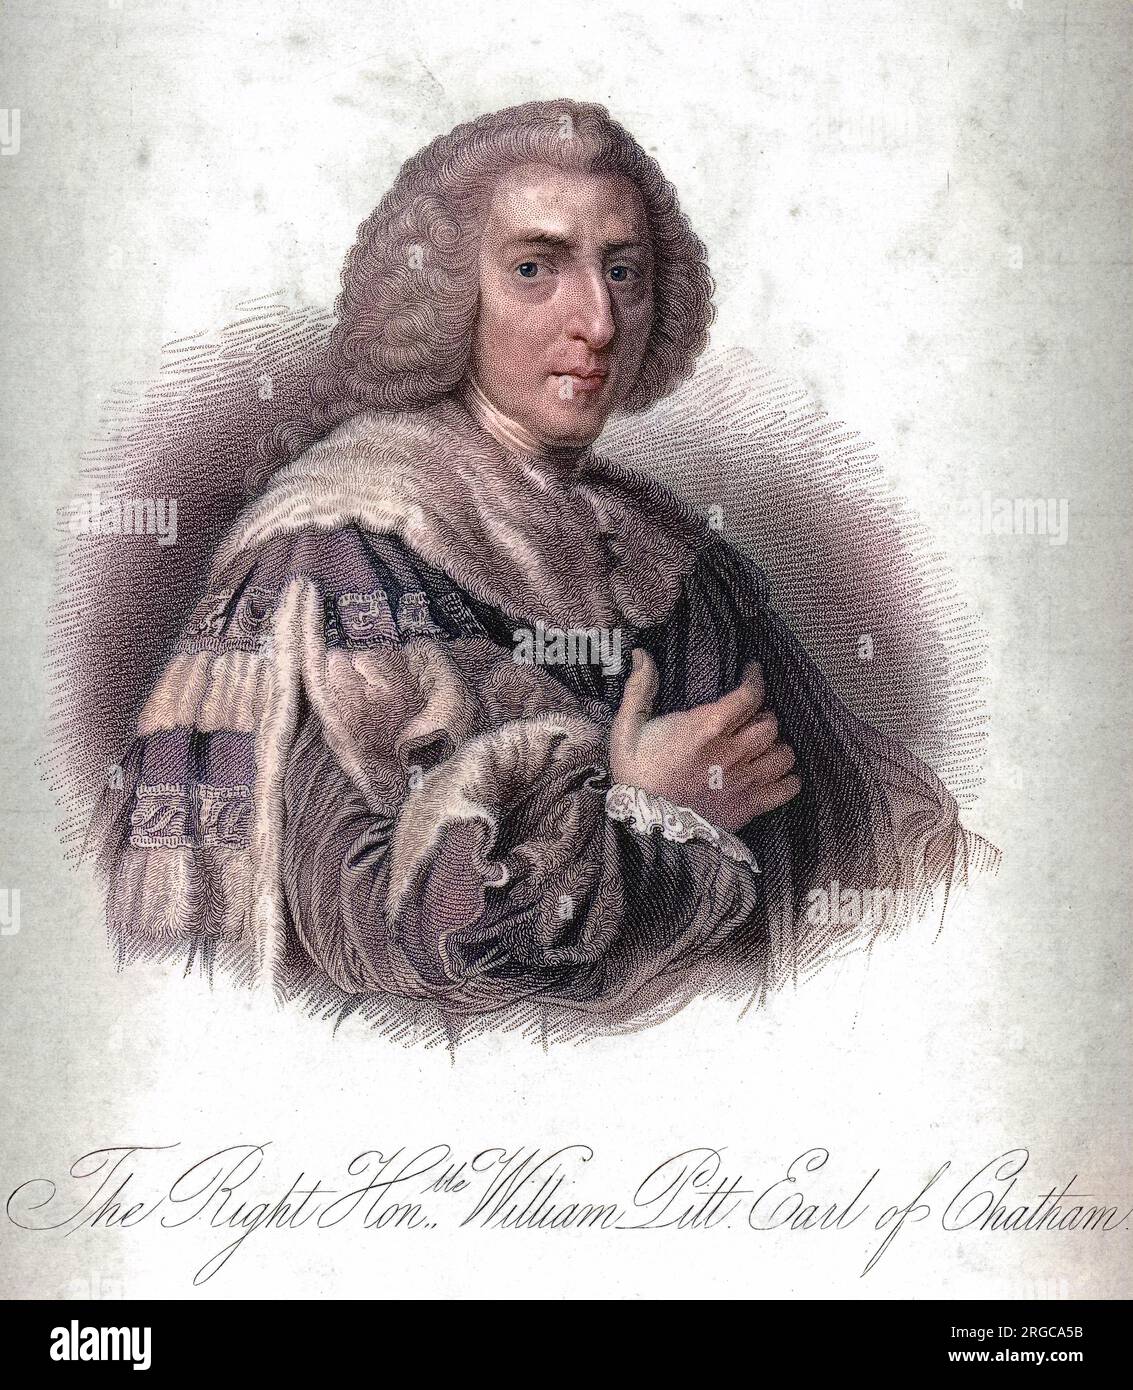 Gravur von William Pitt, 1. Earl of Chatham, dem englischen Staatsmann und Redner, der als Pitt der Ältere bekannt wurde. Sein zweiter Sohn war William Pitt (der jüngere), der im Alter von nur 24 Jahren britischer Premierminister wurde. Stockfoto